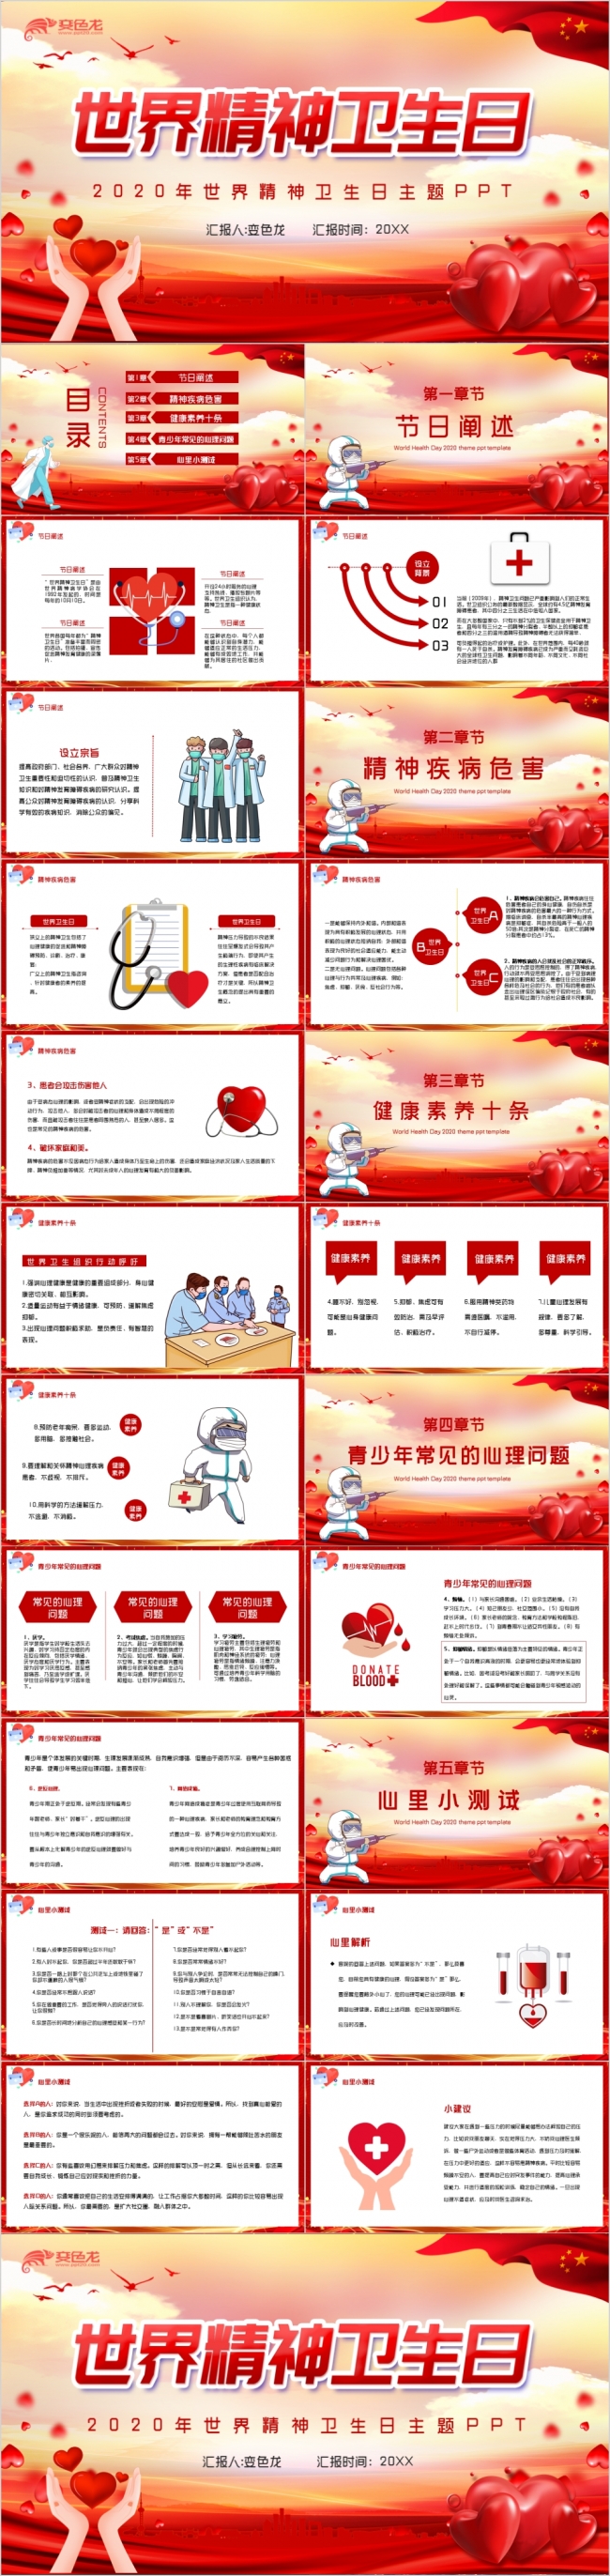 红色大气党政风世界精神卫生日公益宣传推广PPT模板